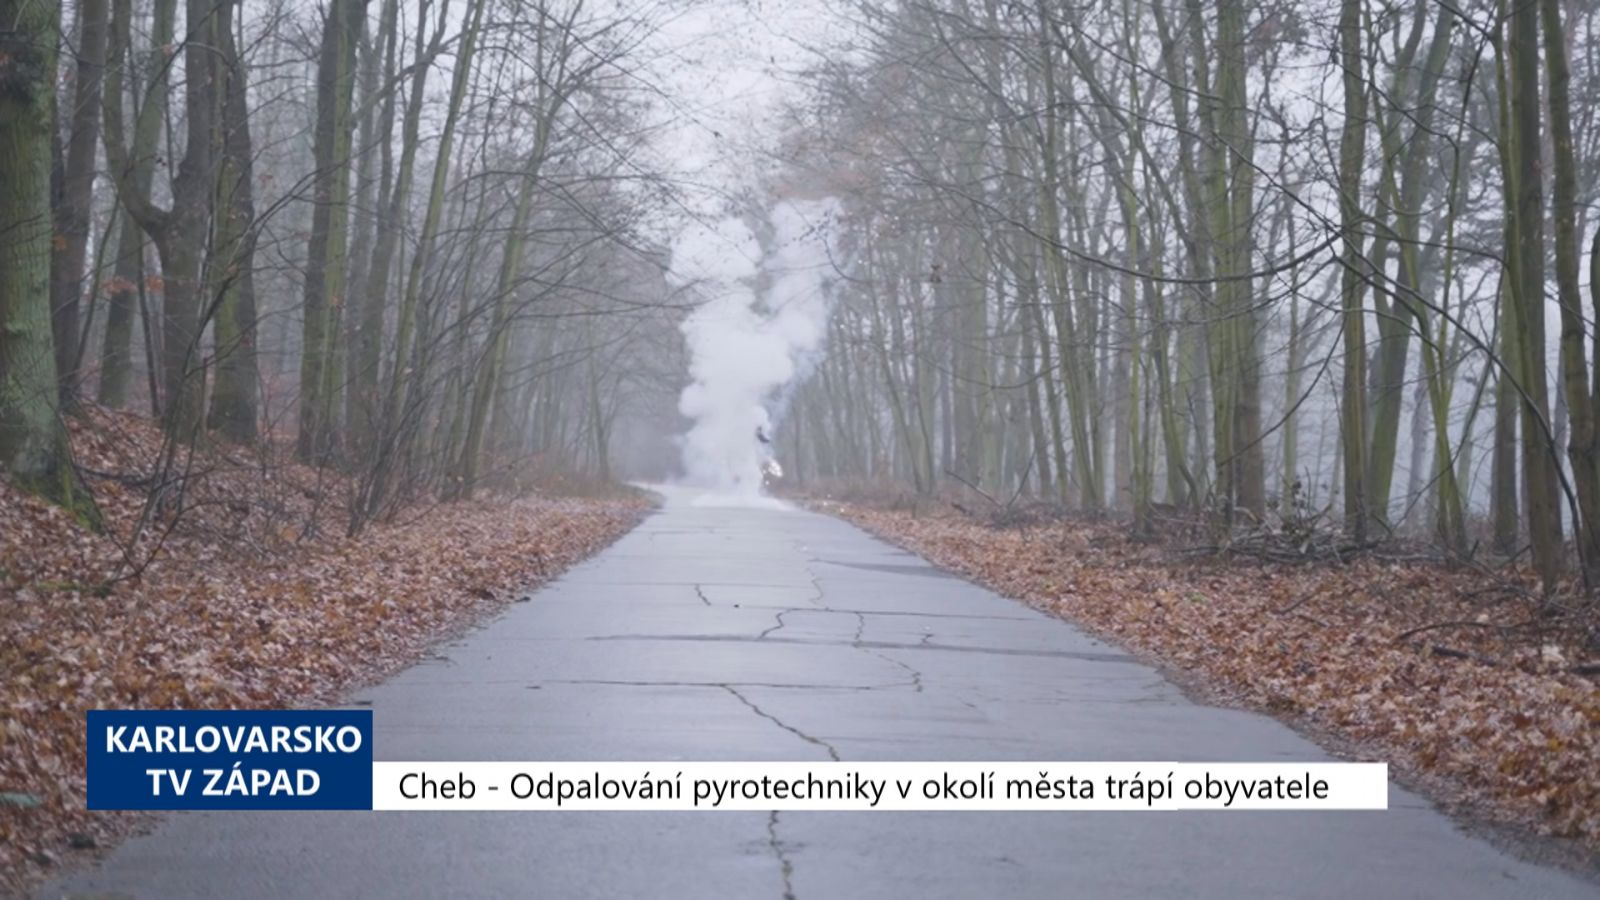 Cheb: Odpalování pyrotechniky v okolí města trápí obyvatele (TV Západ)